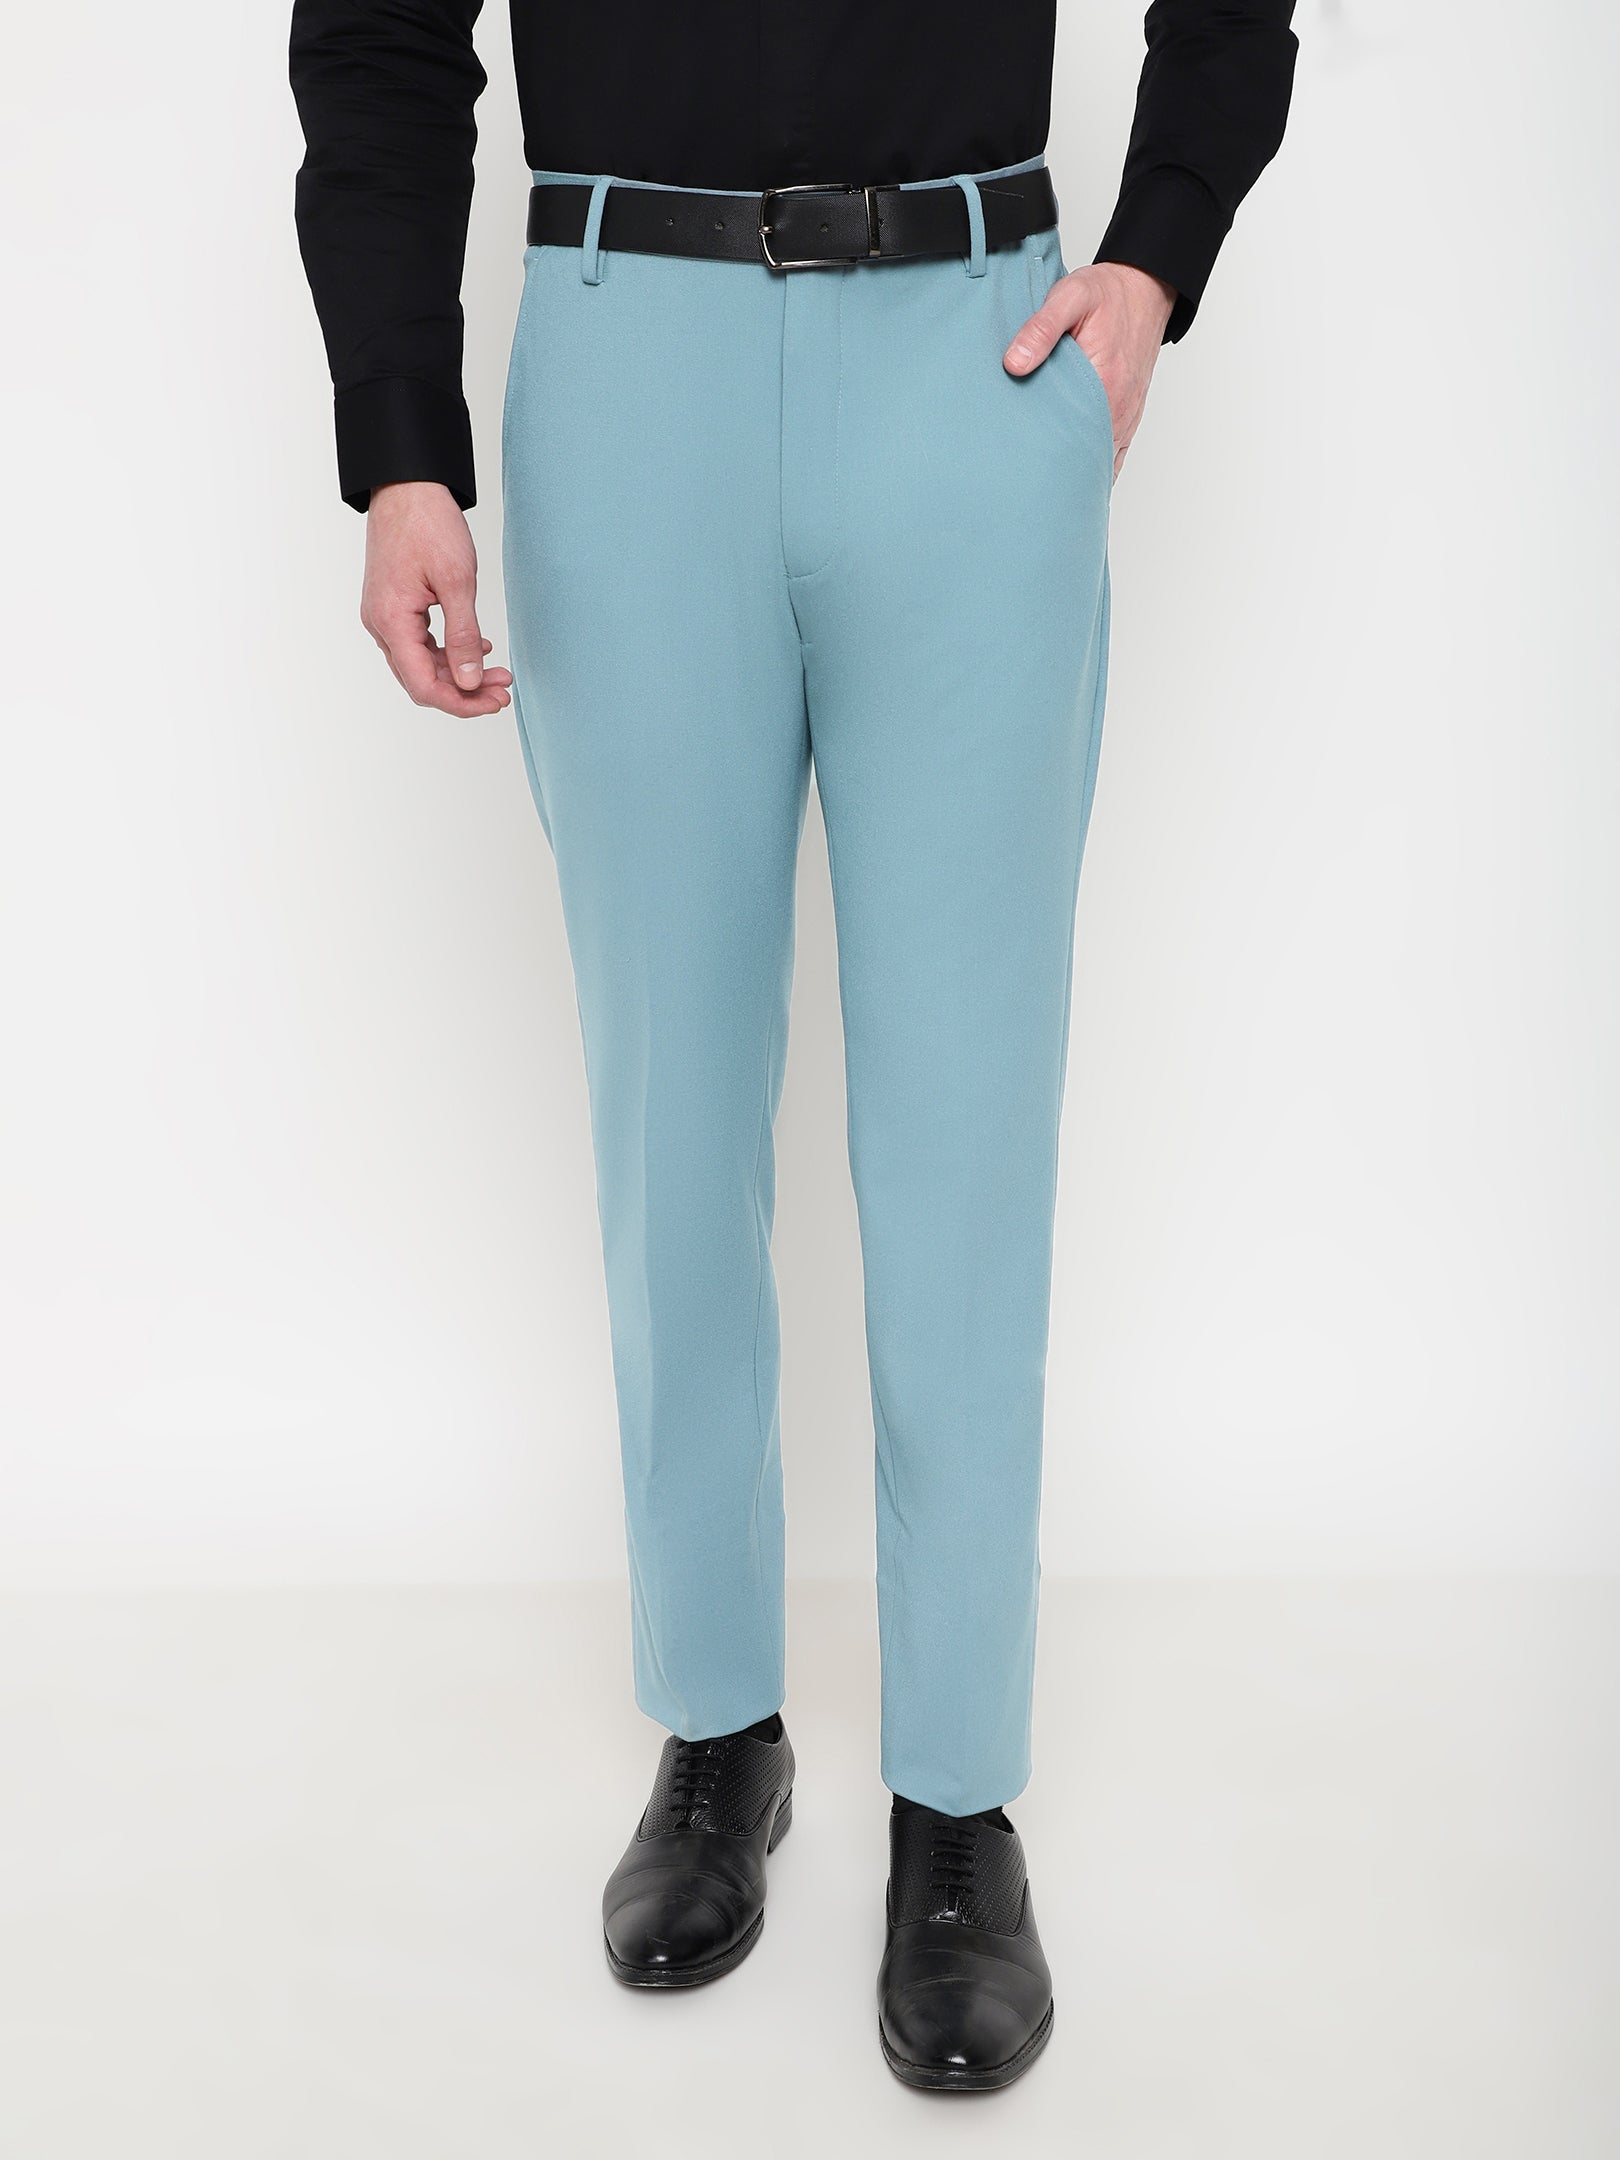 Buy Teal Blue Slim Pants Online - W for Woman